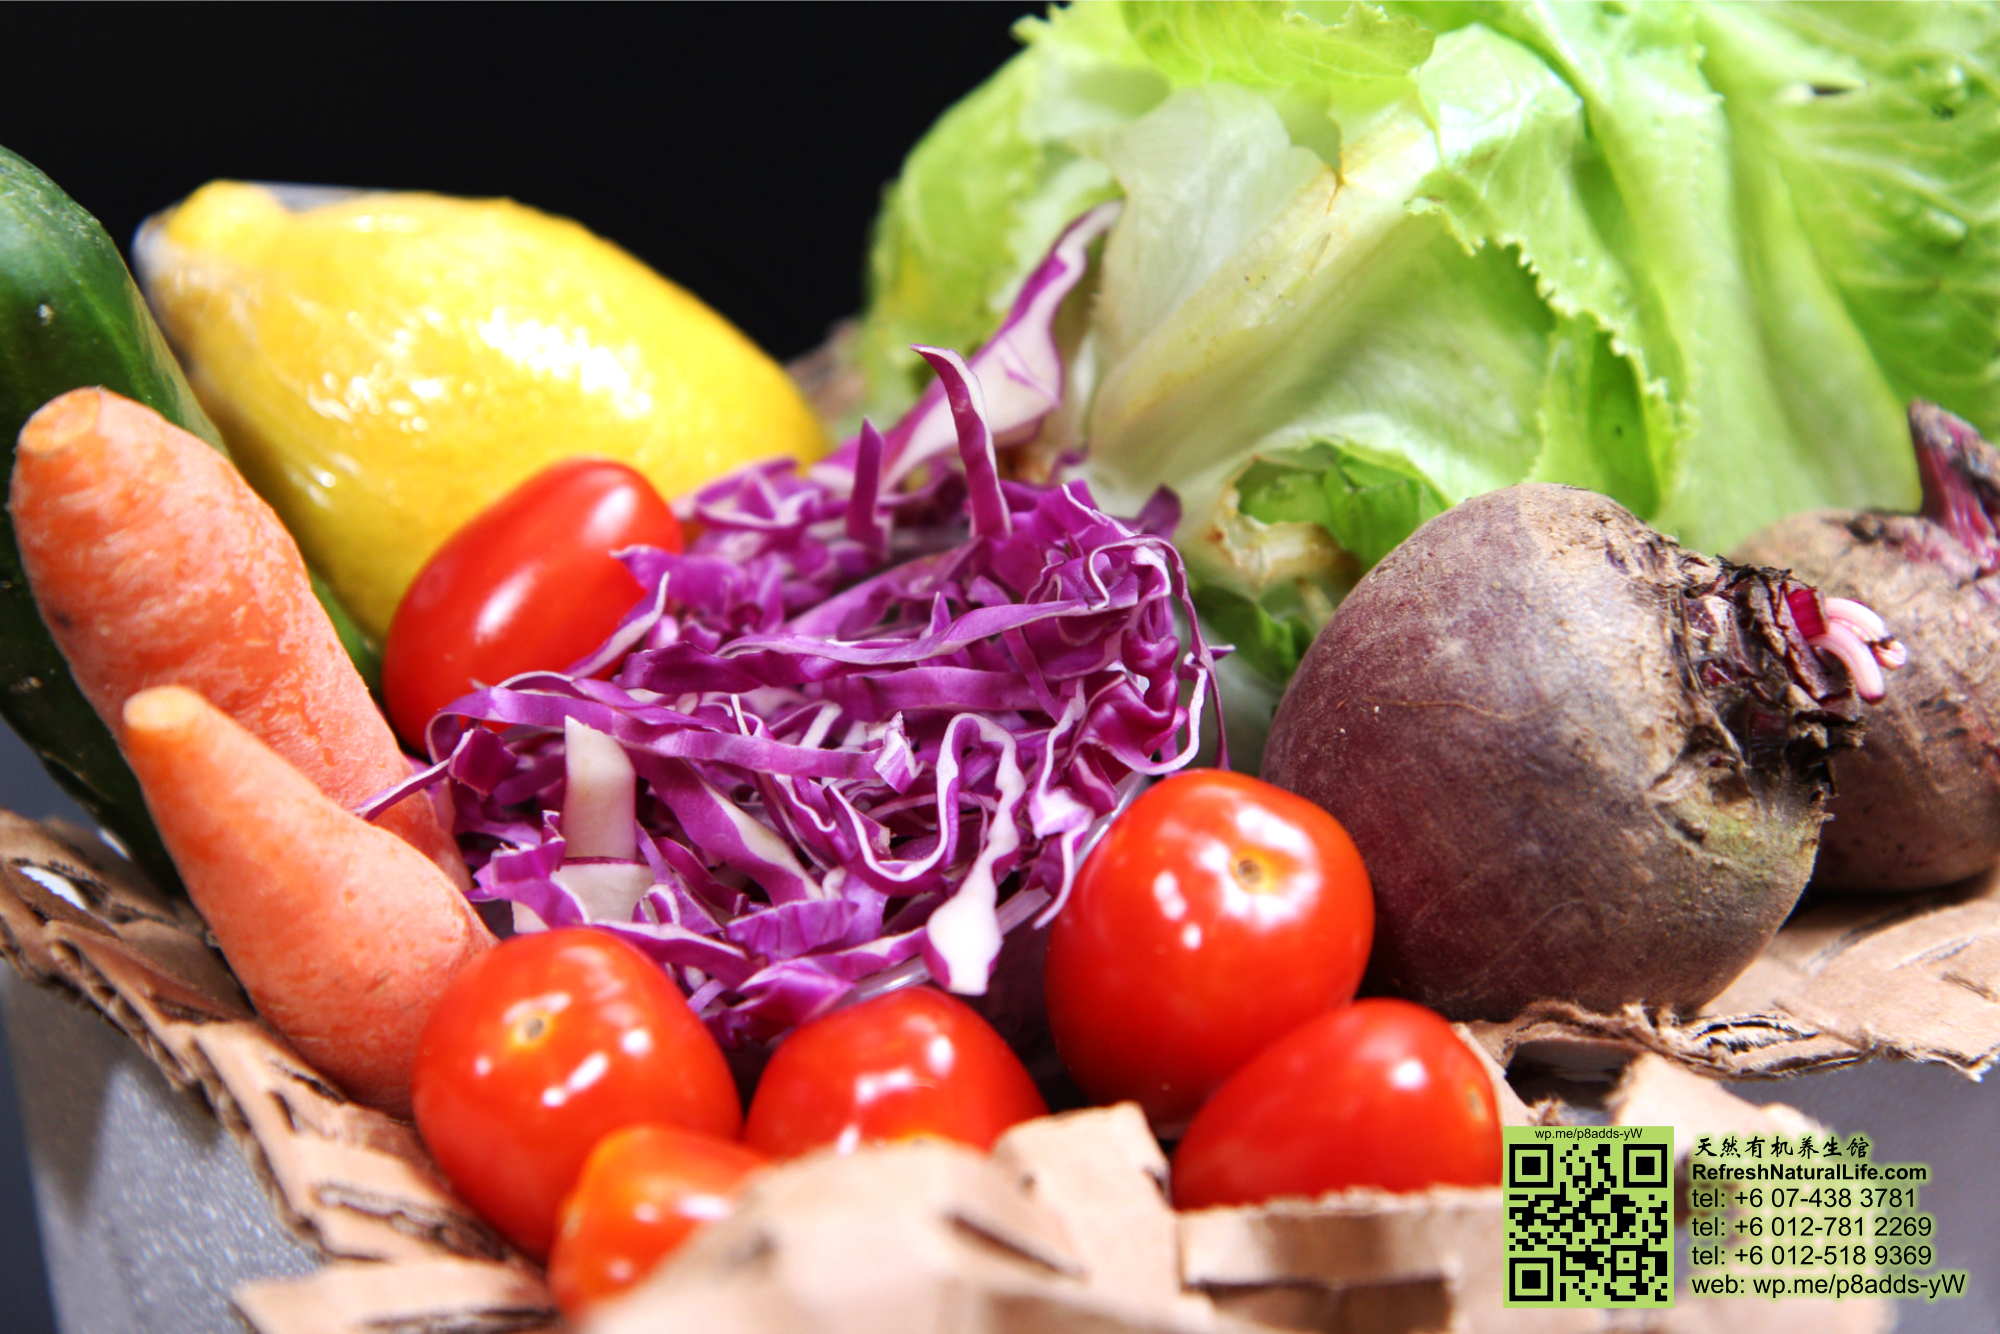 batu-pahat-organic-health-care-organic-sayur-box-vegetable-box-refresh-natural-organic-products-healthy-products-johor-malaysia-%e5%b3%87%e6%a0%aa%e5%90%a7%e8%be%96-%e6%9c%89%e6%9c%ba%e8%94%ac